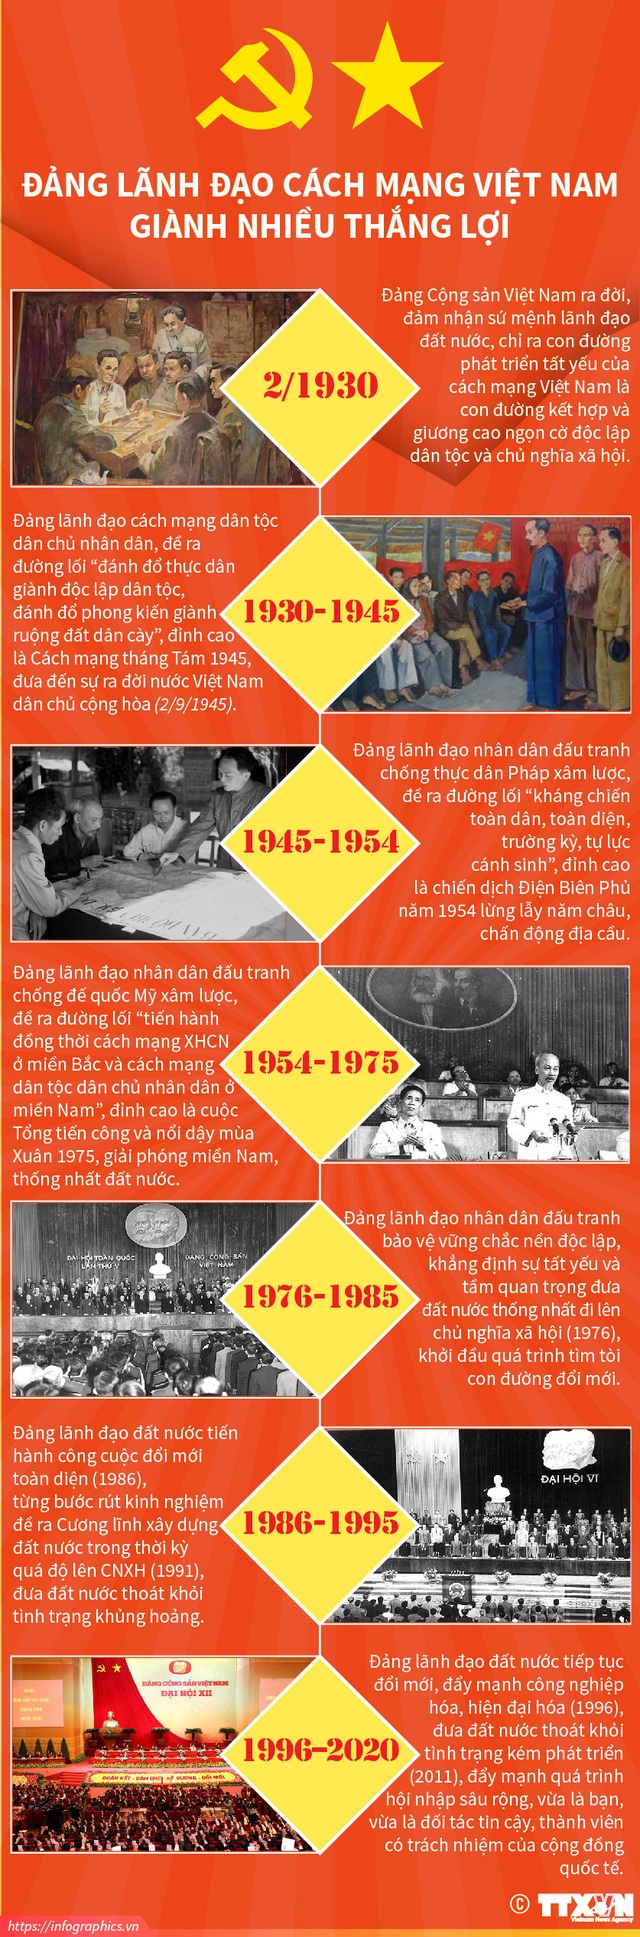 Được tạo nên từ những nỗ lực của các anh hùng dân tộc, Cách mạng Việt Nam đã để lại cho chúng ta một di sản vô giá. Hãy đến để cảm nhận rõ nhất những giá trị văn hóa, tinh thần của con người Việt Nam, cùng những bức ảnh tuyệt đẹp ghi lại những chiến công anh dũng của quân và dân ta.